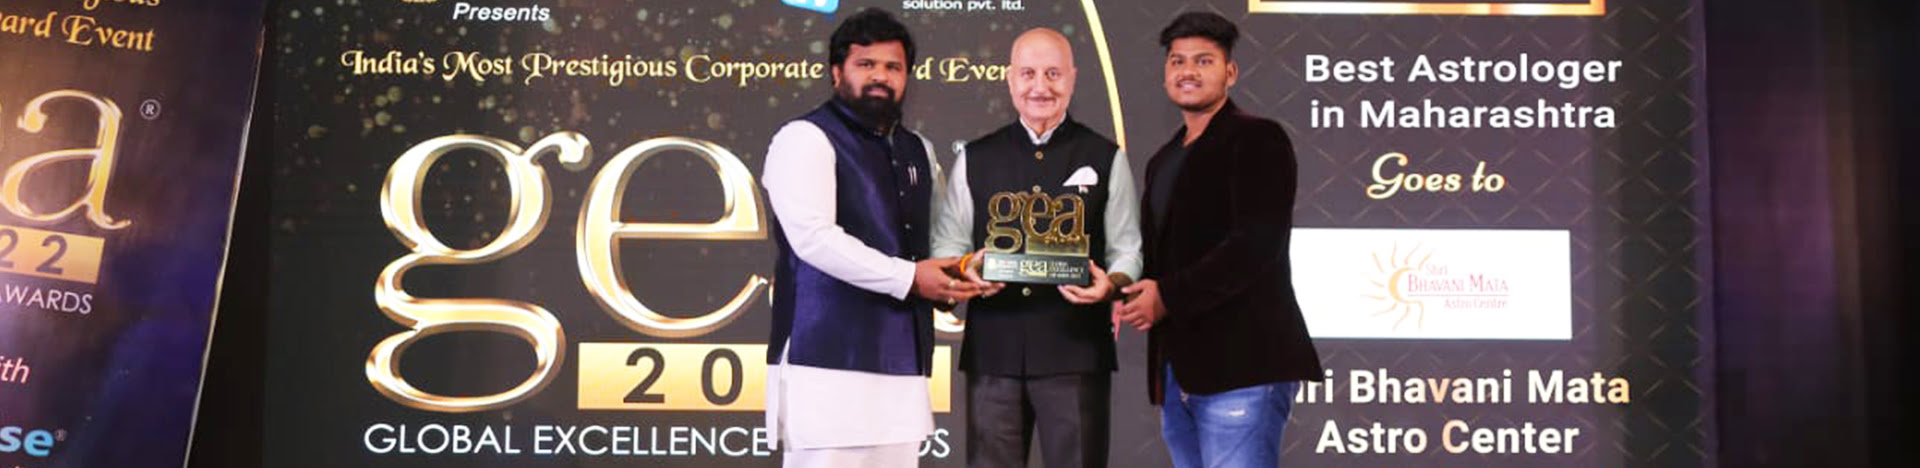 Best Astrologer in Maharashtra award winner